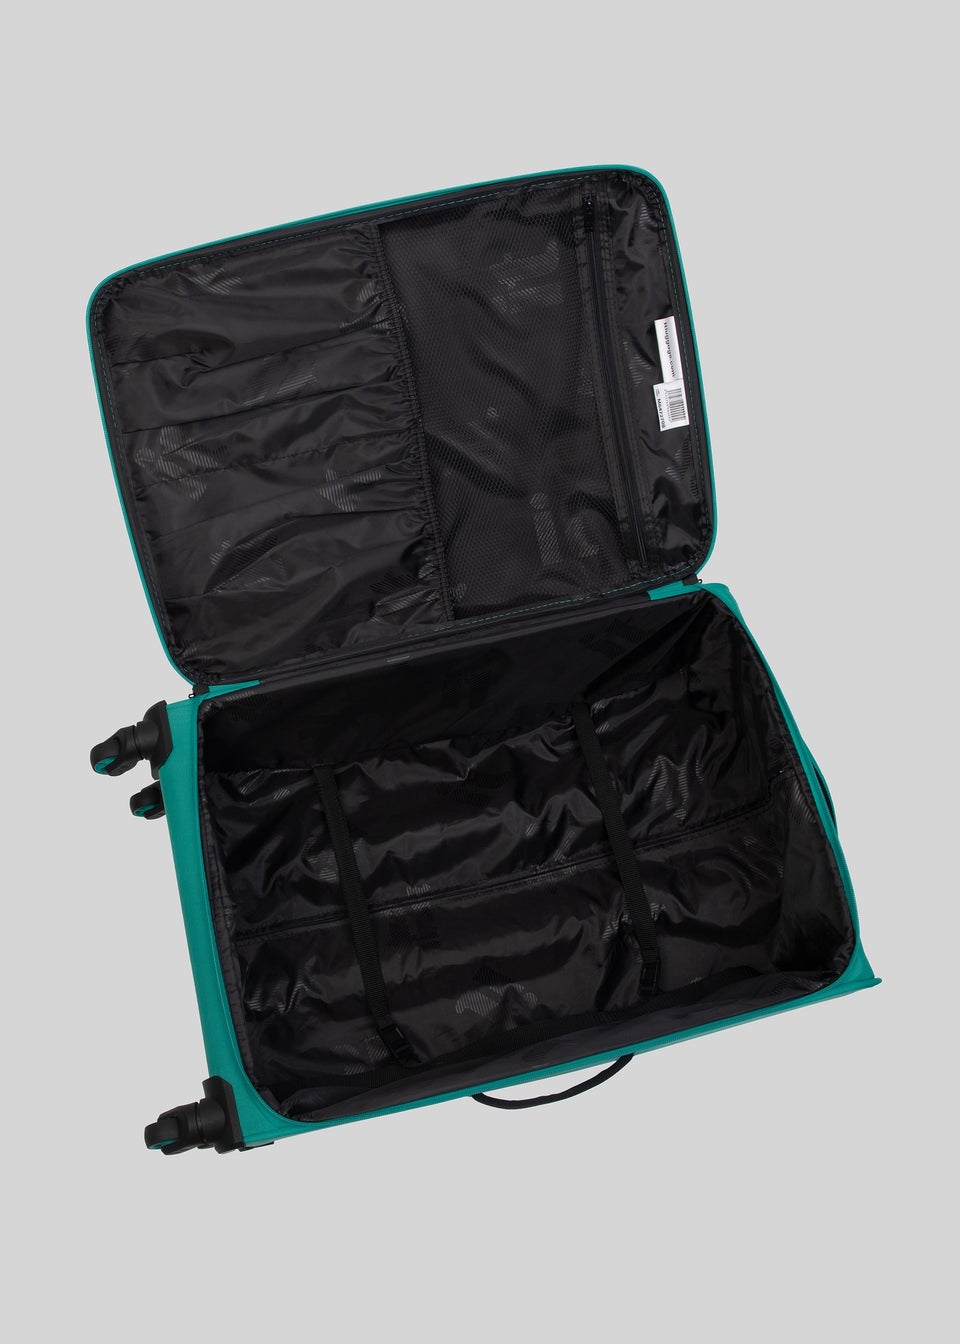 IT Luggage Turquoise Soft Shell Suitcase